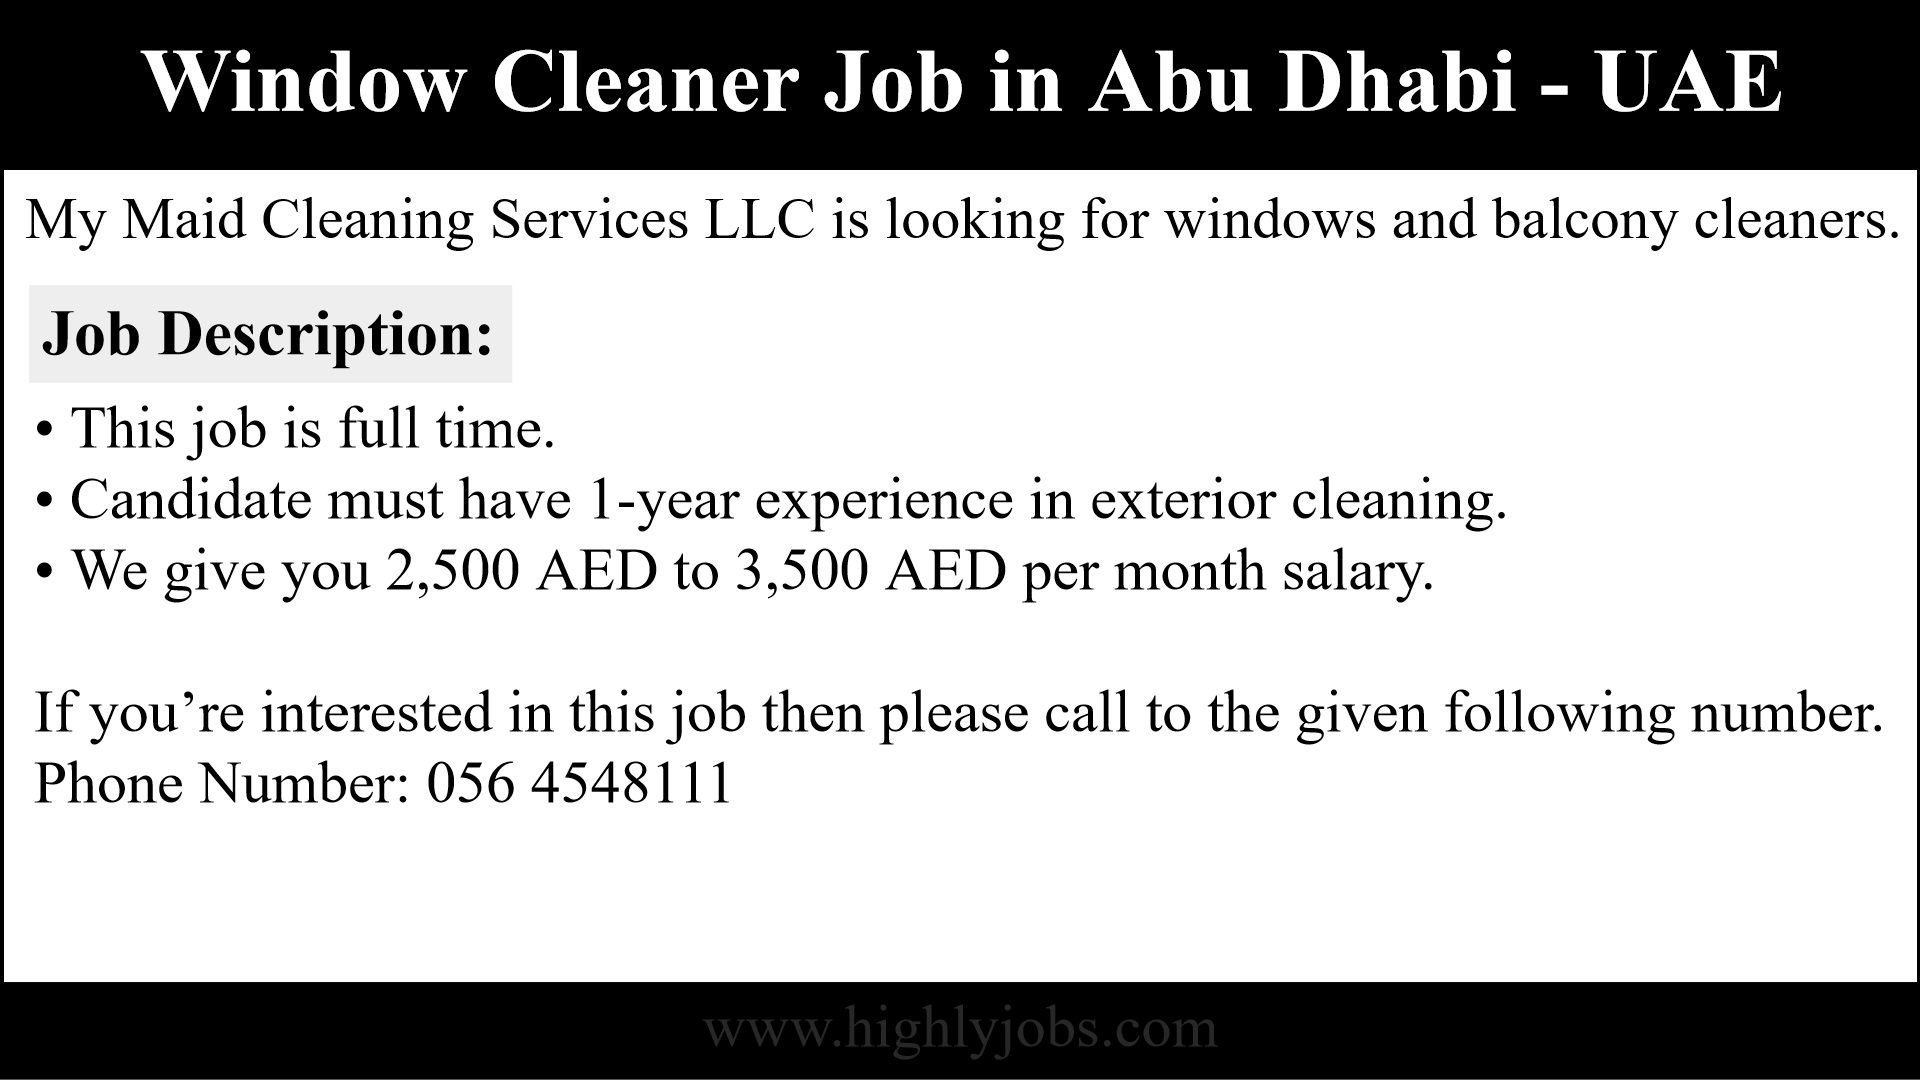 Window Cleaner Job in Abu Dhabi